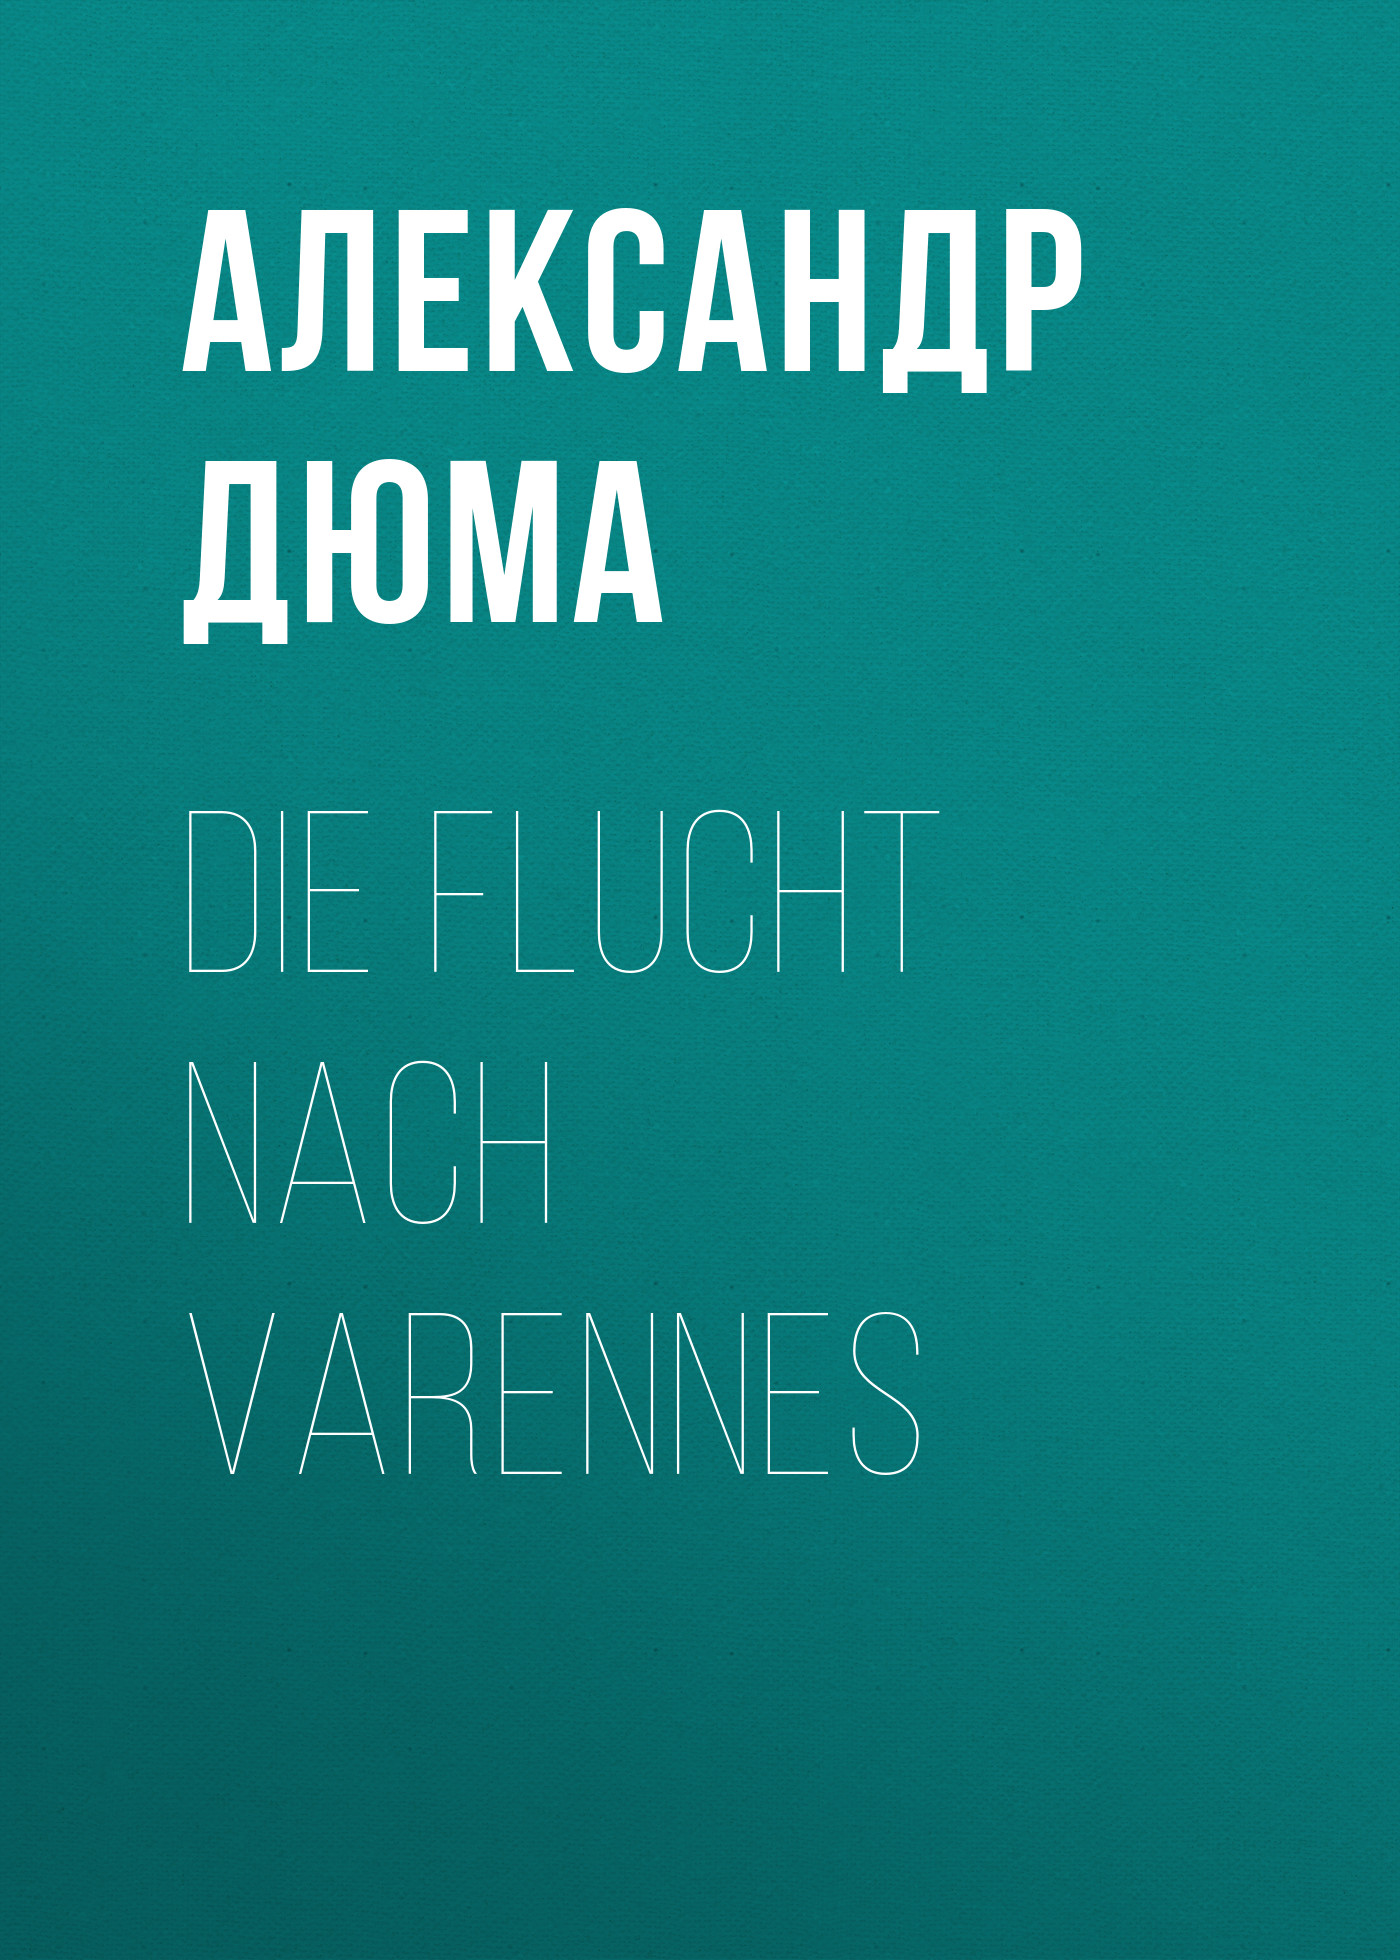 Книга Die Flucht nach Varennes из серии , созданная Alexandre Dumas der Ältere, может относится к жанру Зарубежная классика. Стоимость электронной книги Die Flucht nach Varennes с идентификатором 48632548 составляет 0 руб.